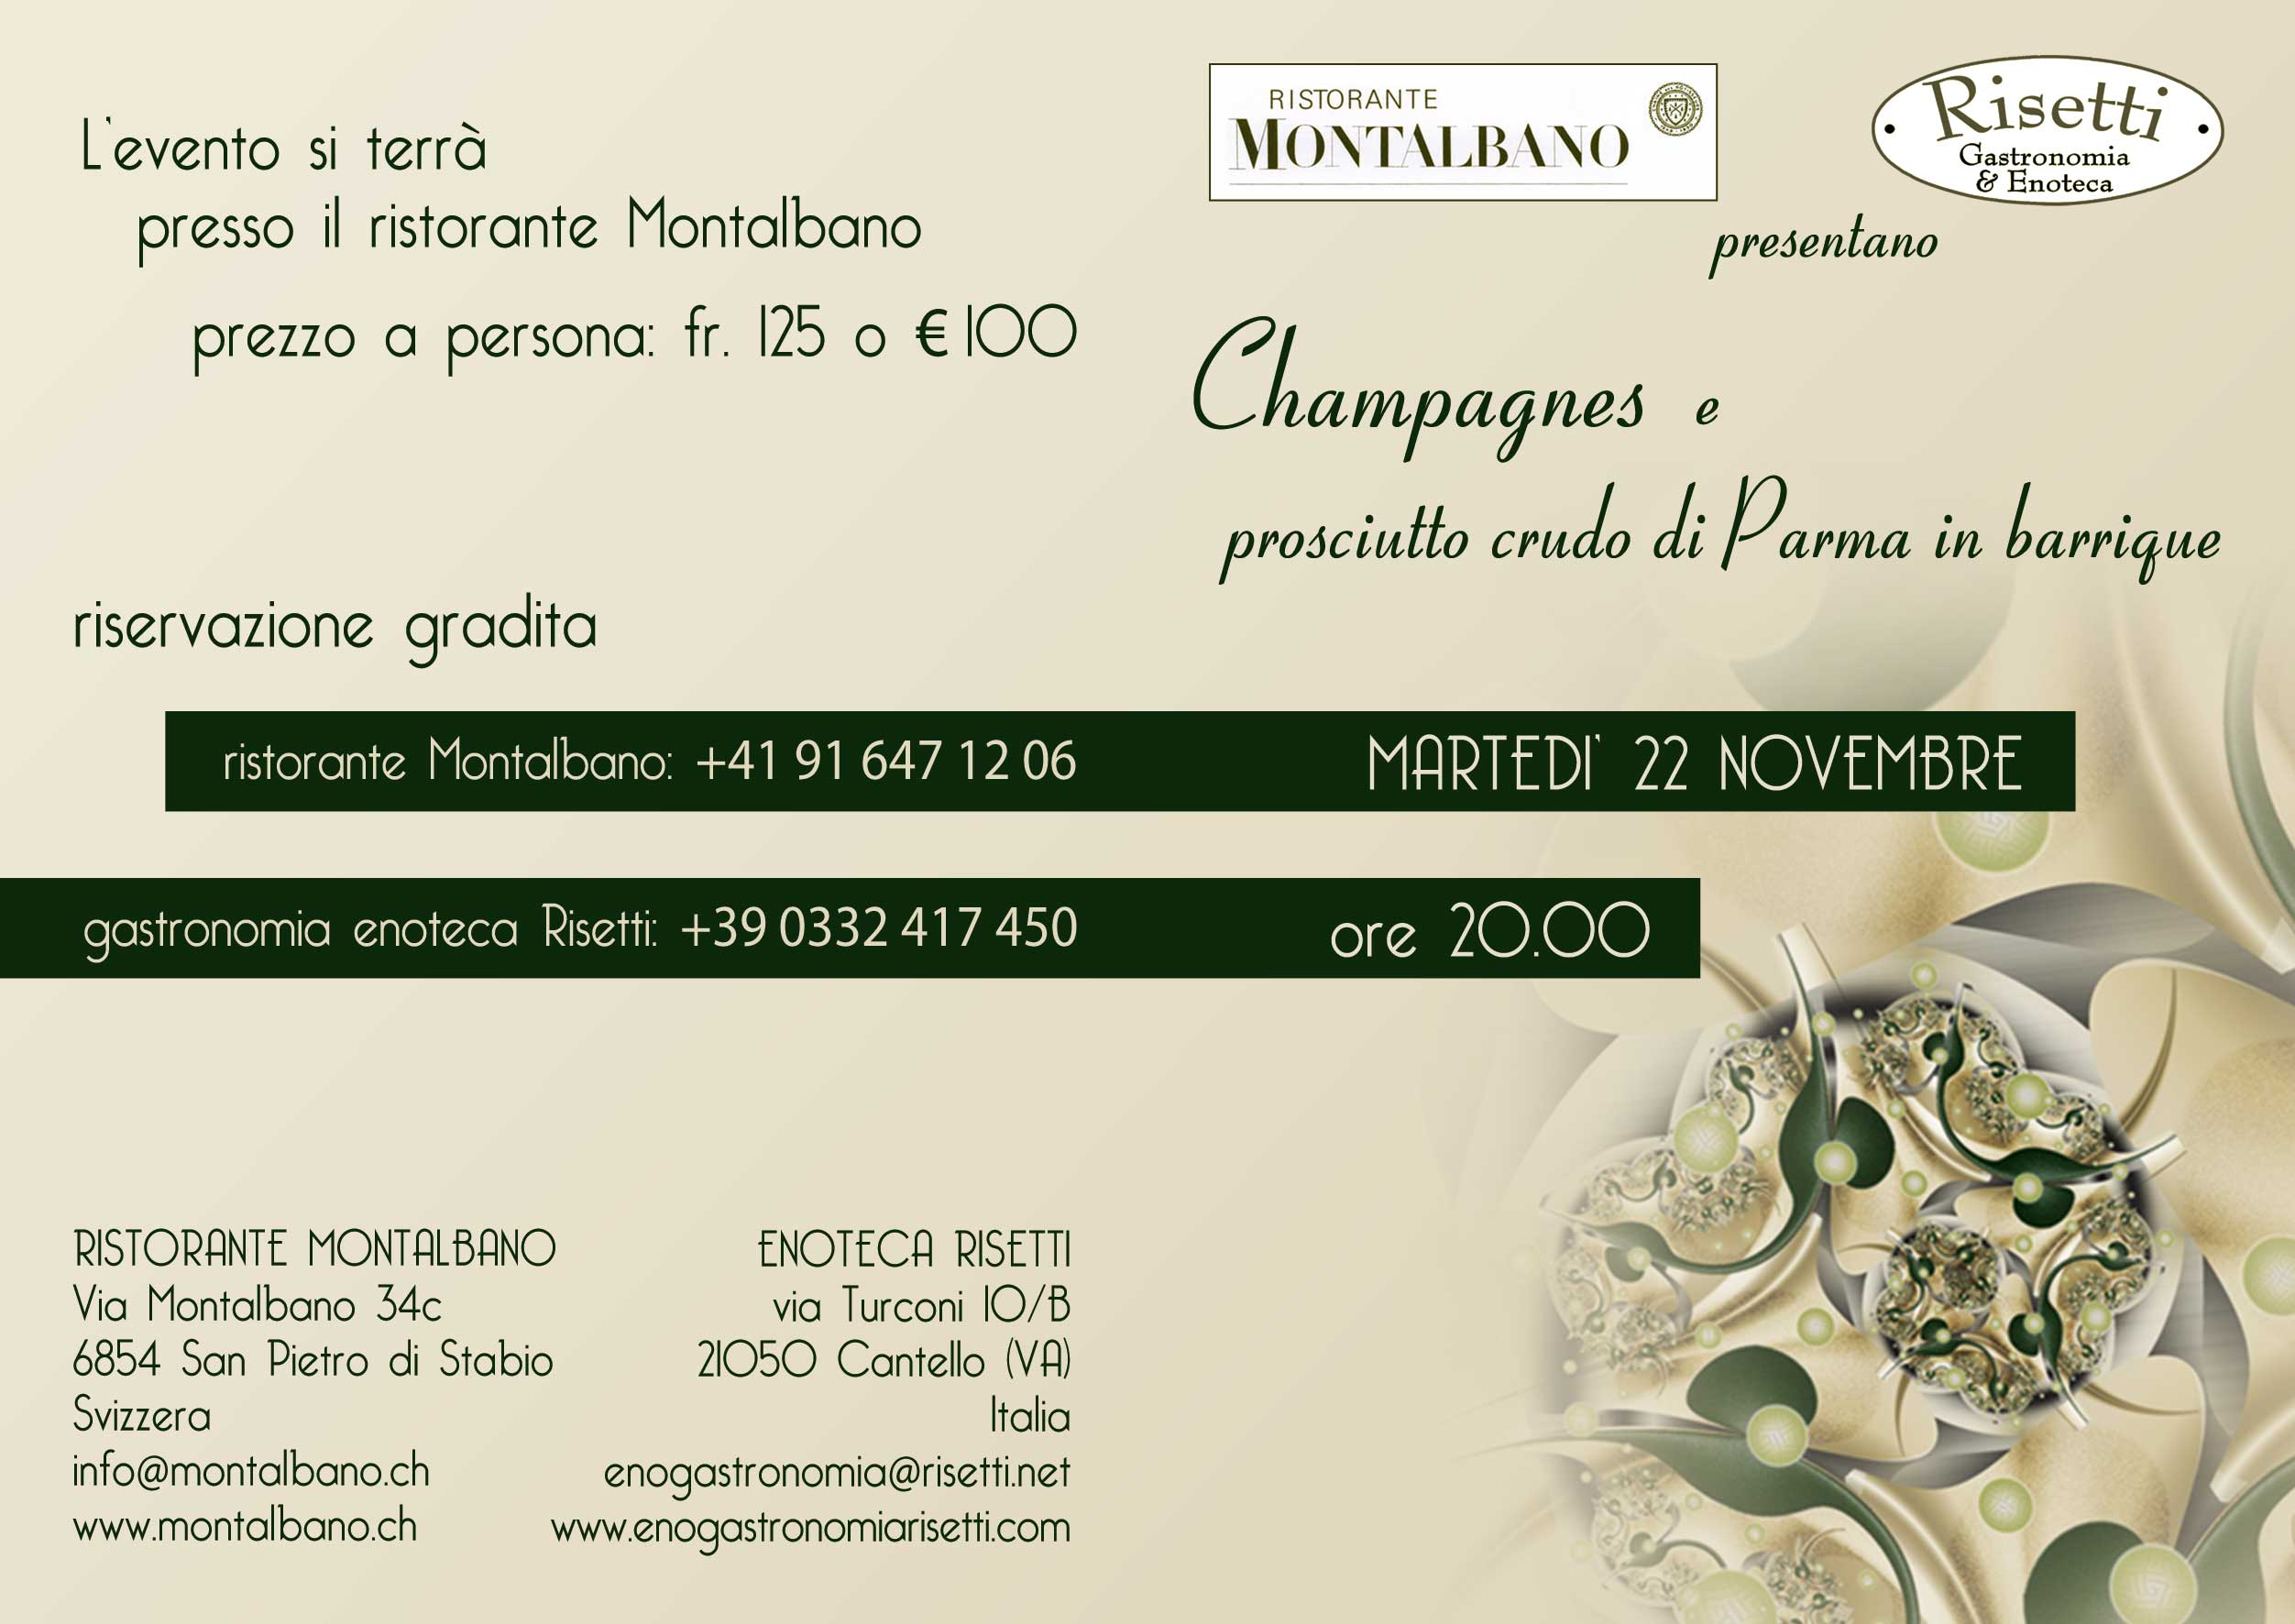 Champagnes e prosciutto crudo di Parma in barrique – Martedì 22 novembre